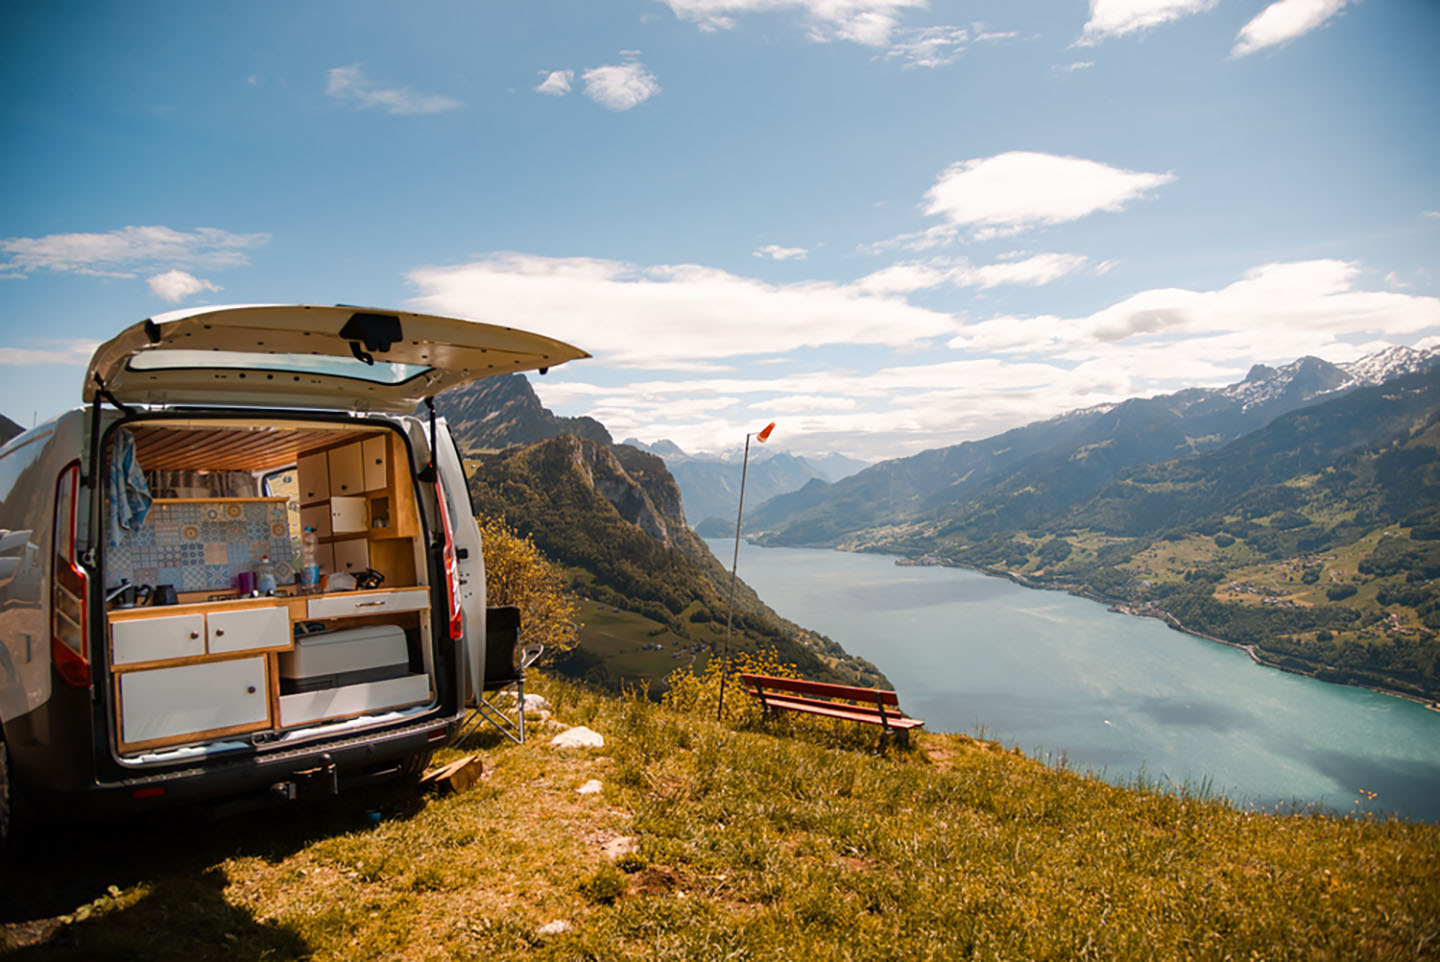 camping van on mountain